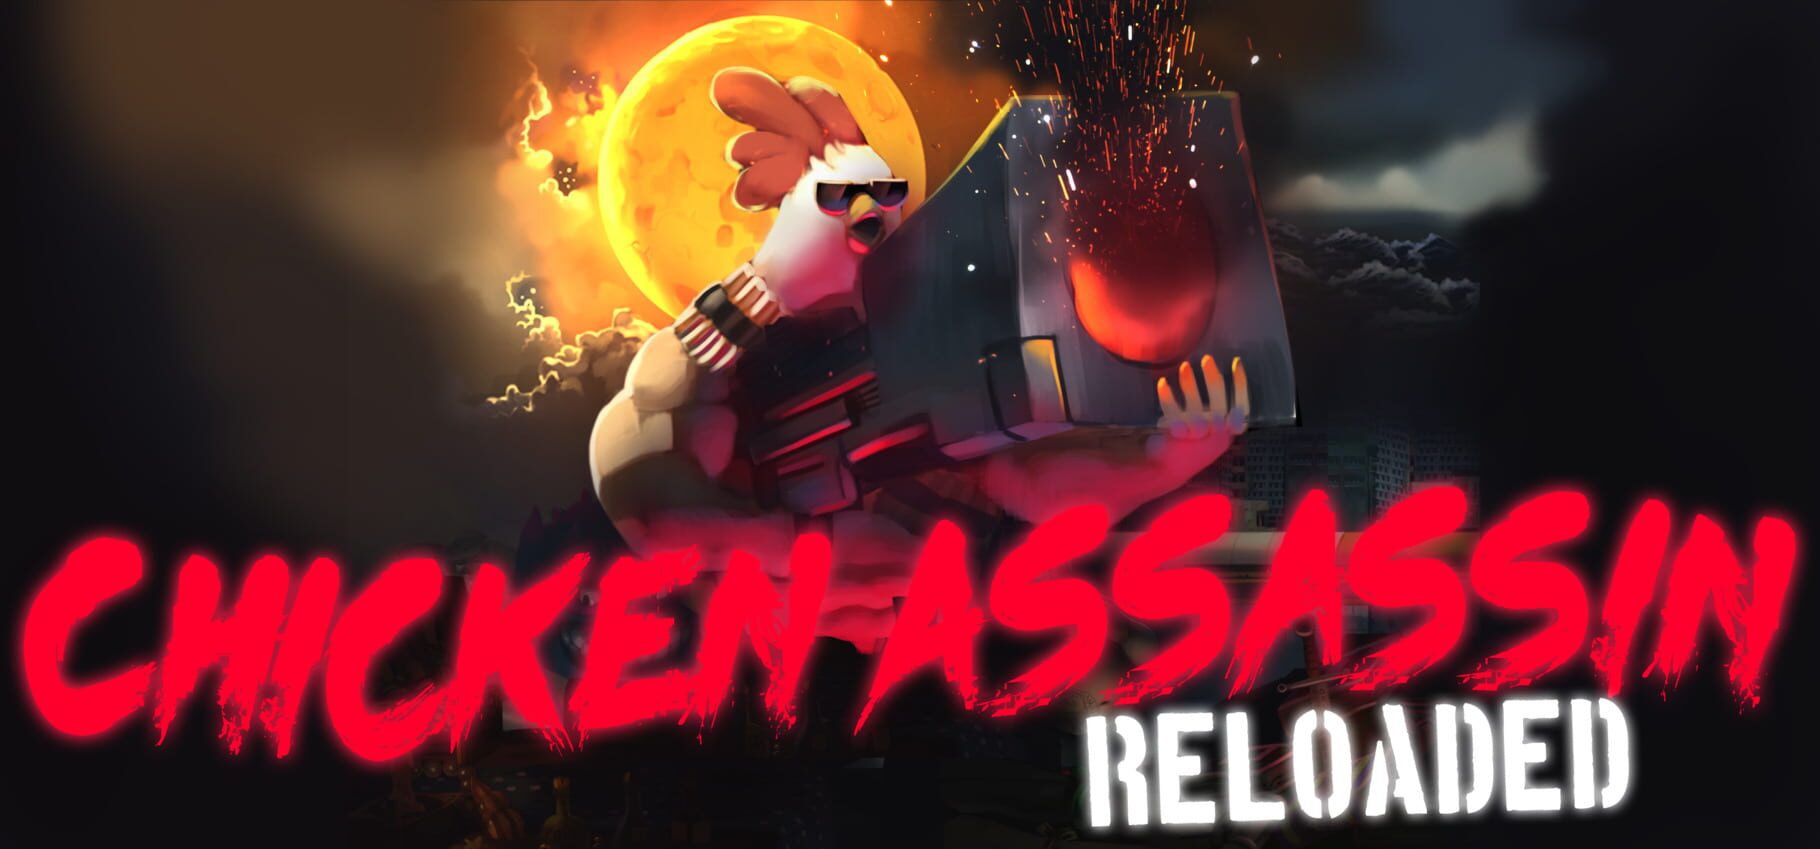 Chicken Assassin: Reloaded artwork